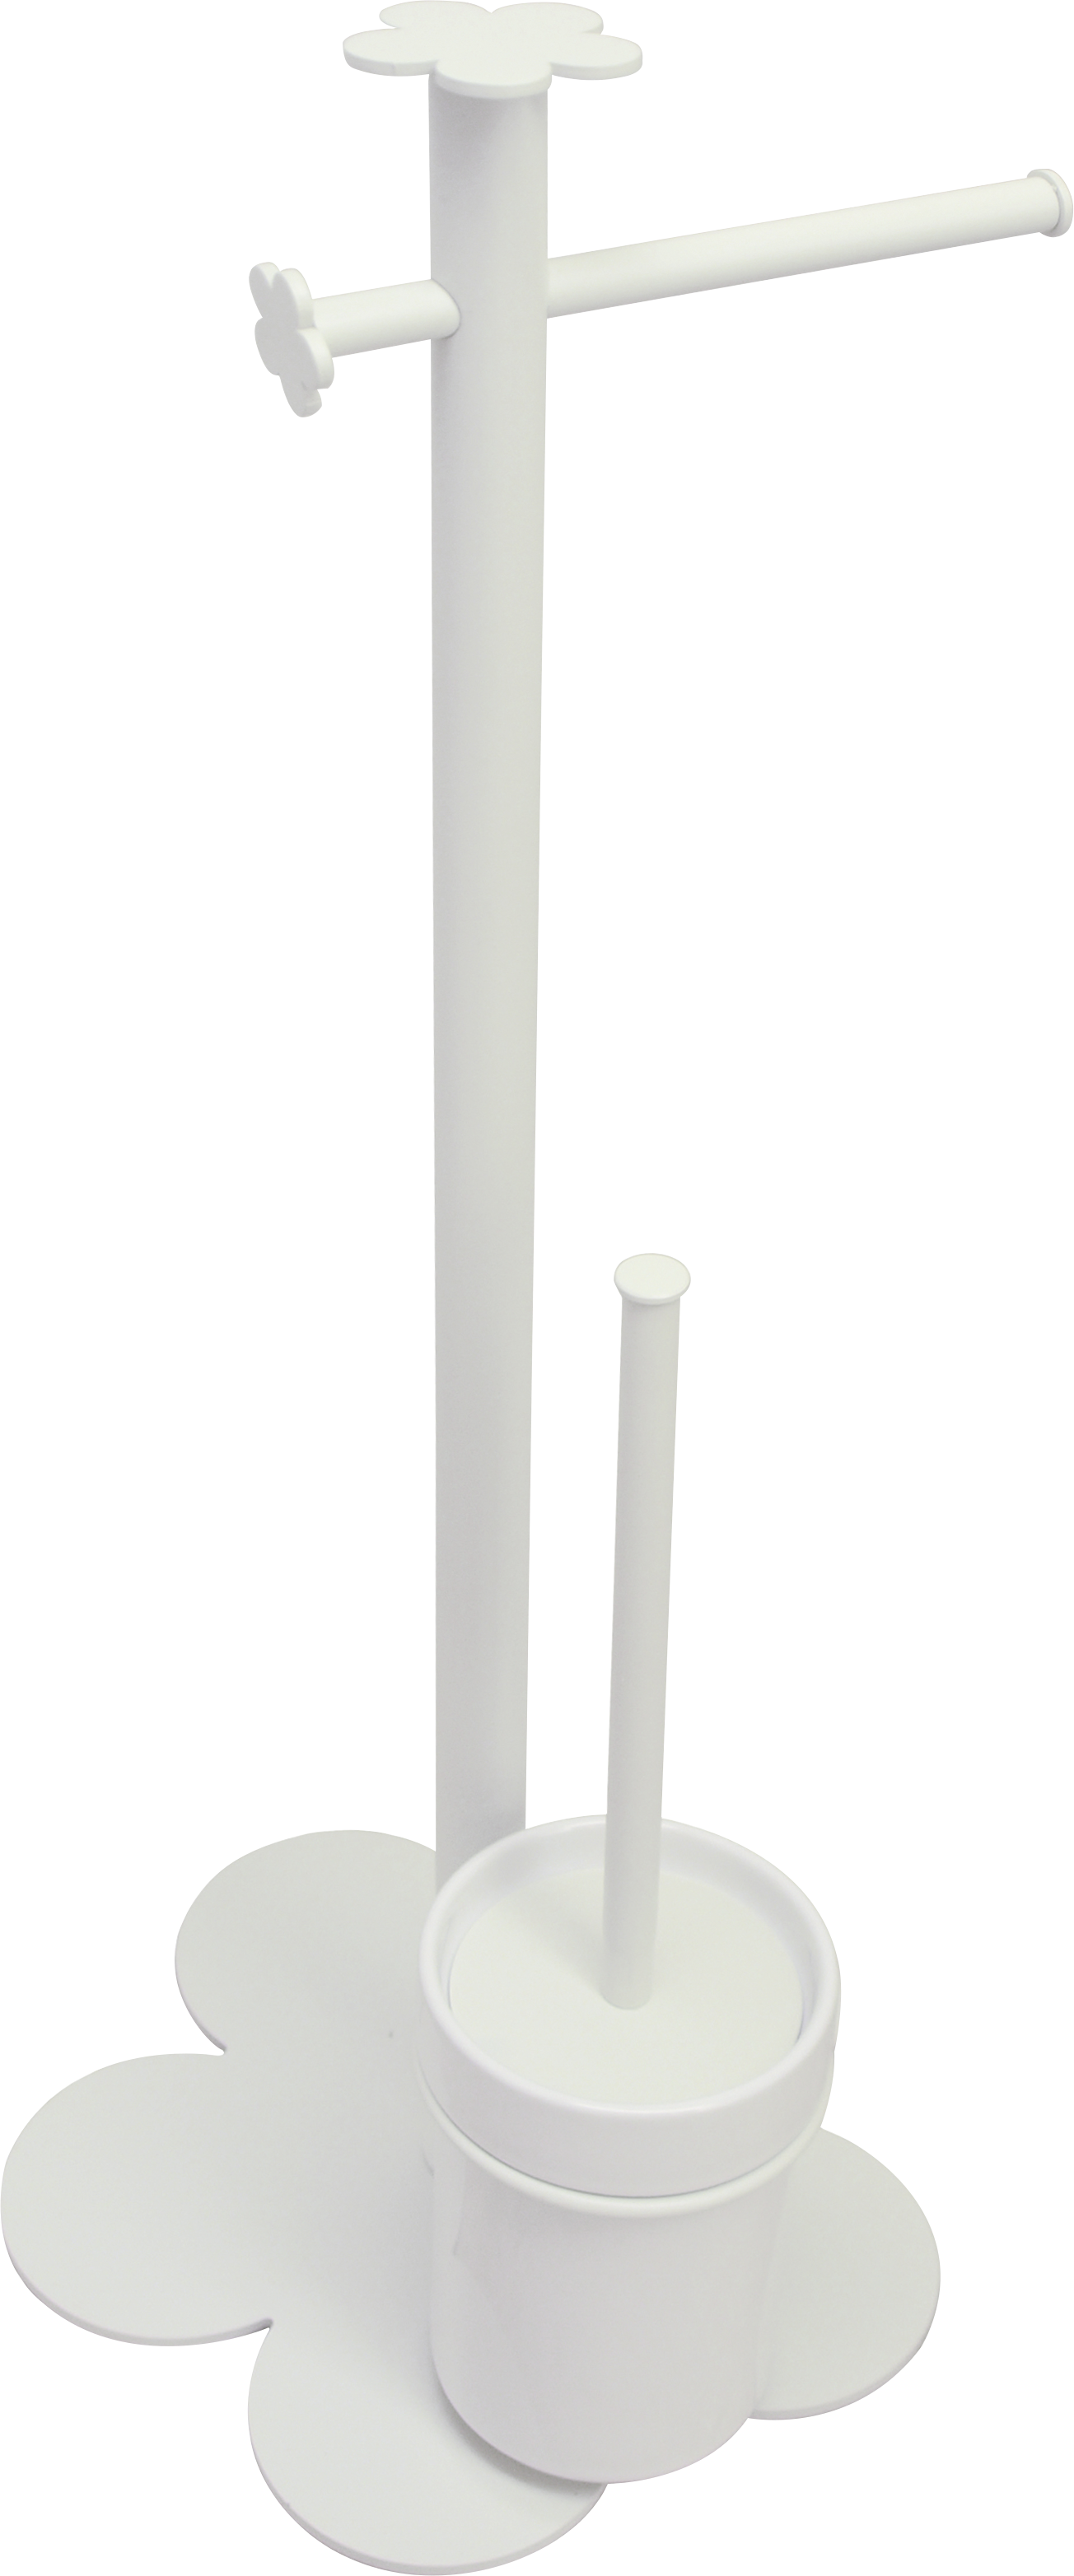 Escobillero y portarrollo provenza blanco 29x62 cm